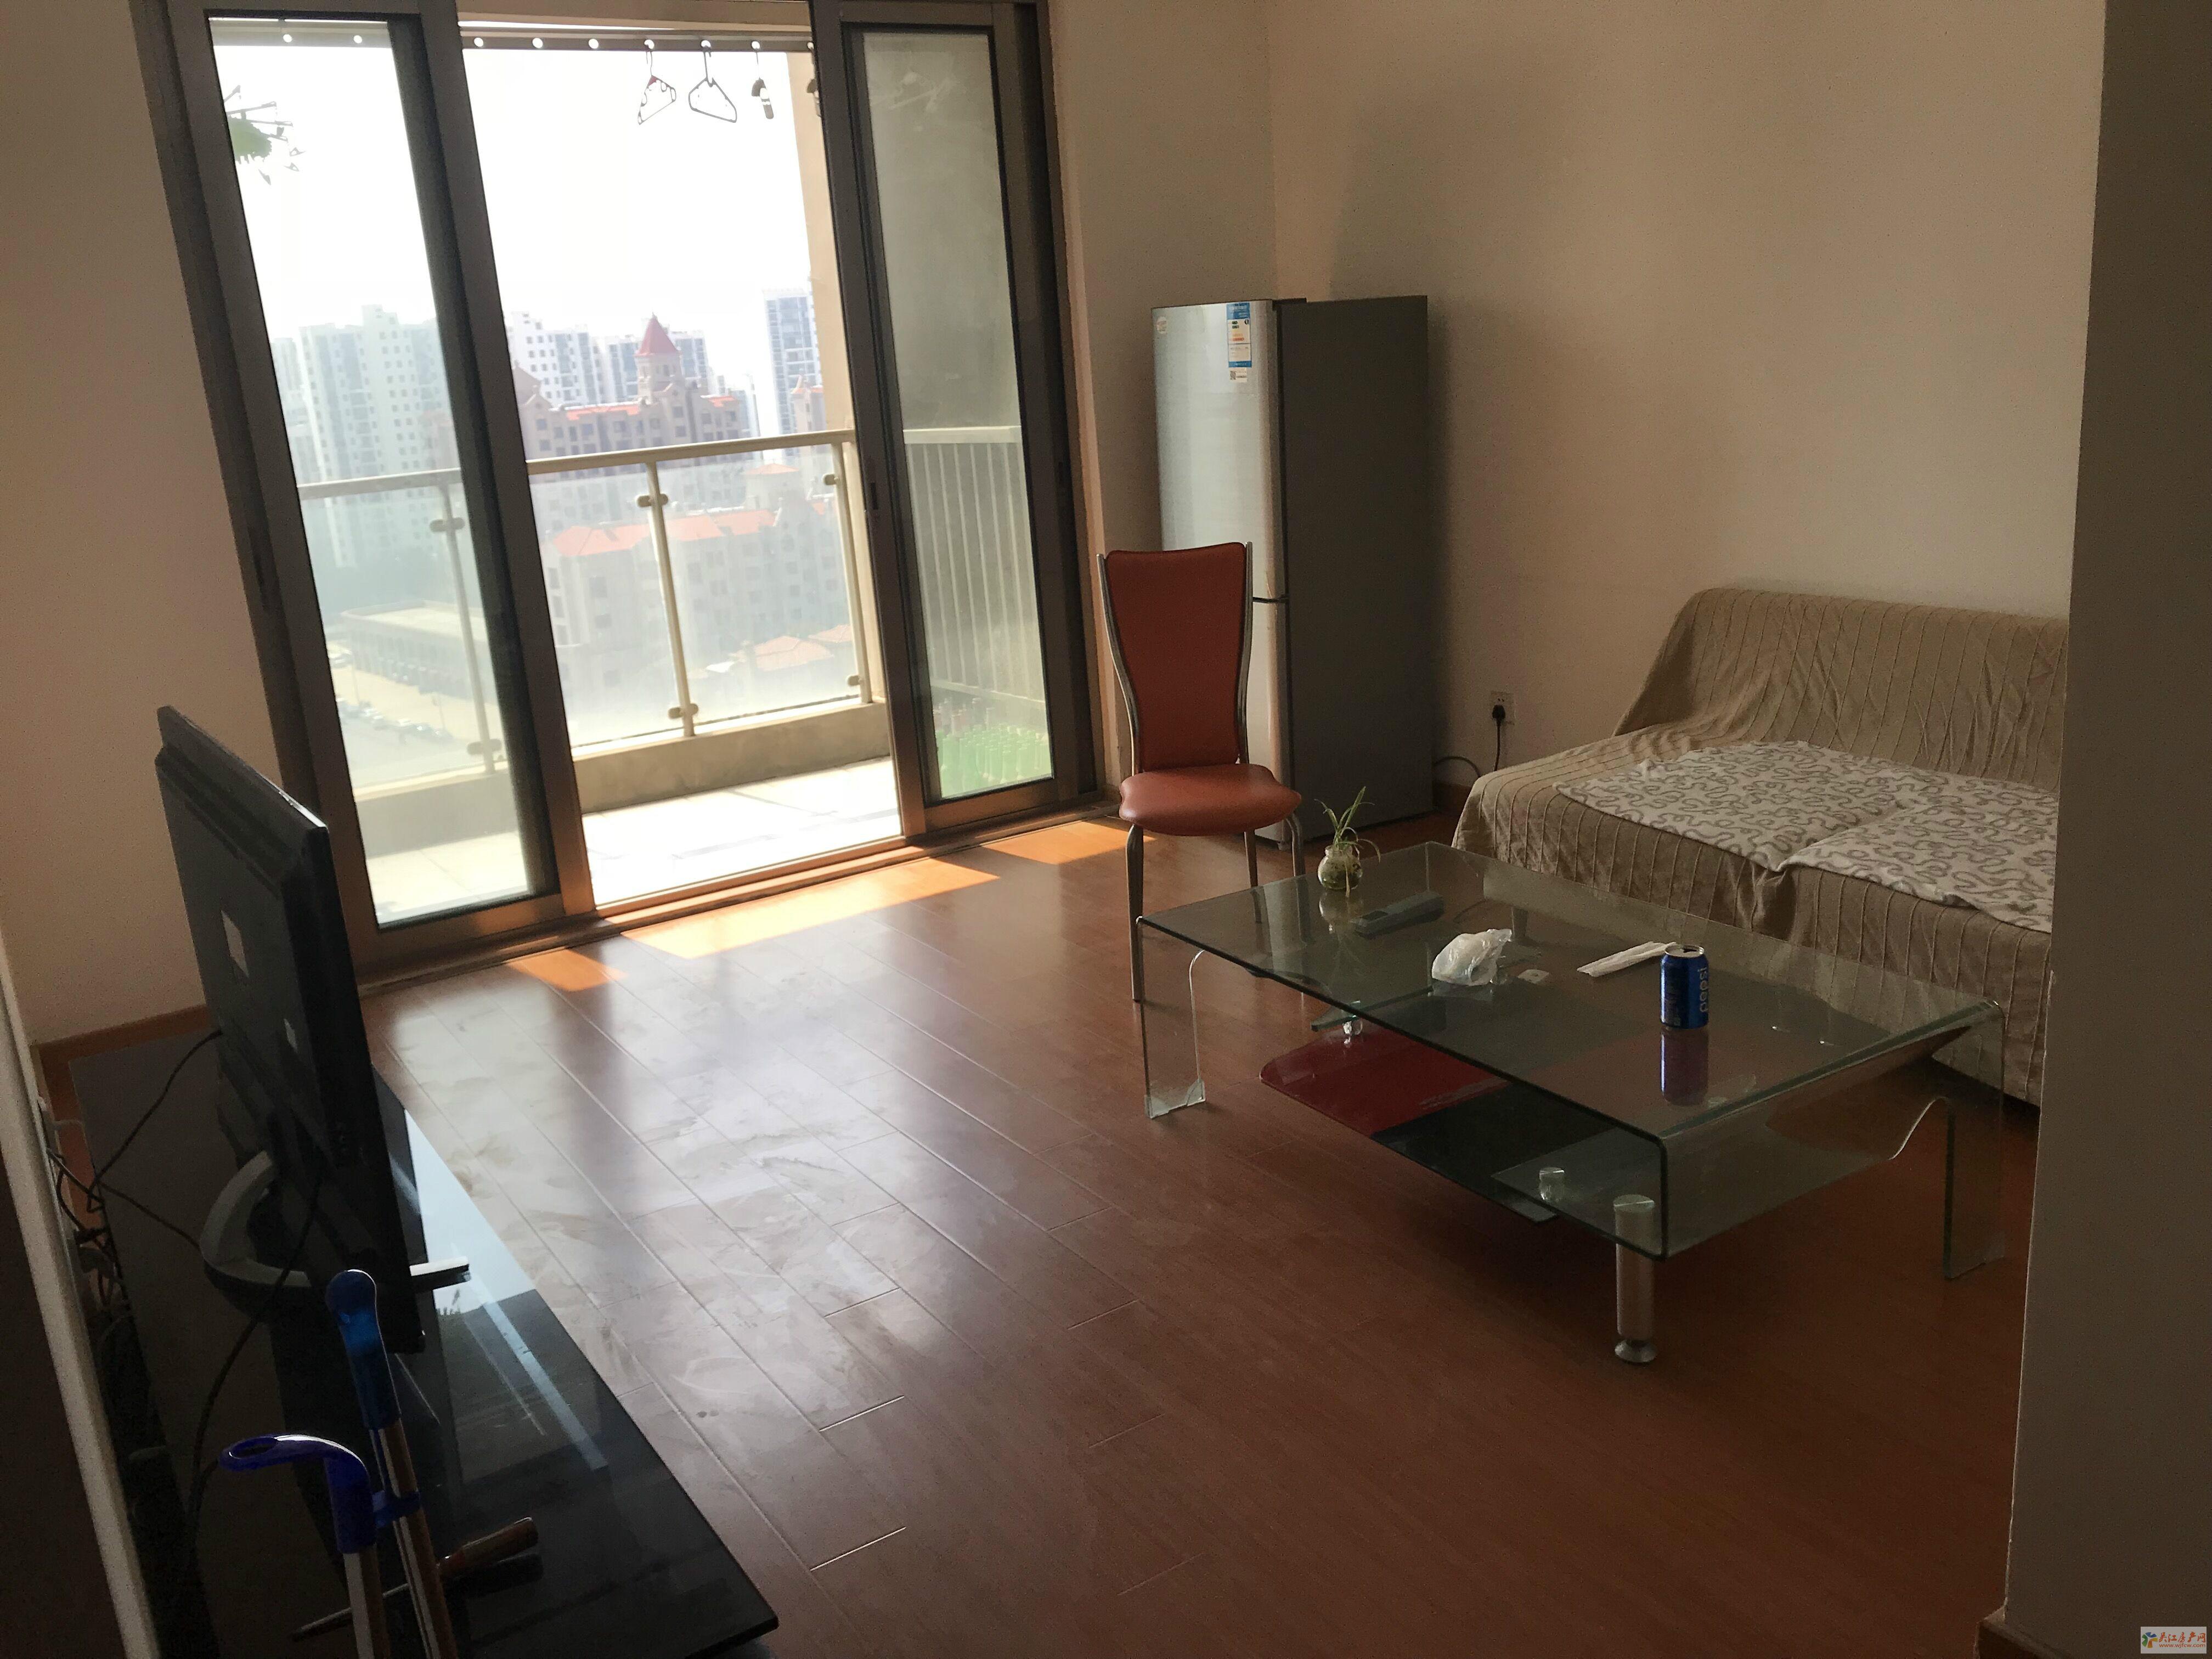 新湖明珠城 2室2厅1卫 87平方米 2200元/月出租